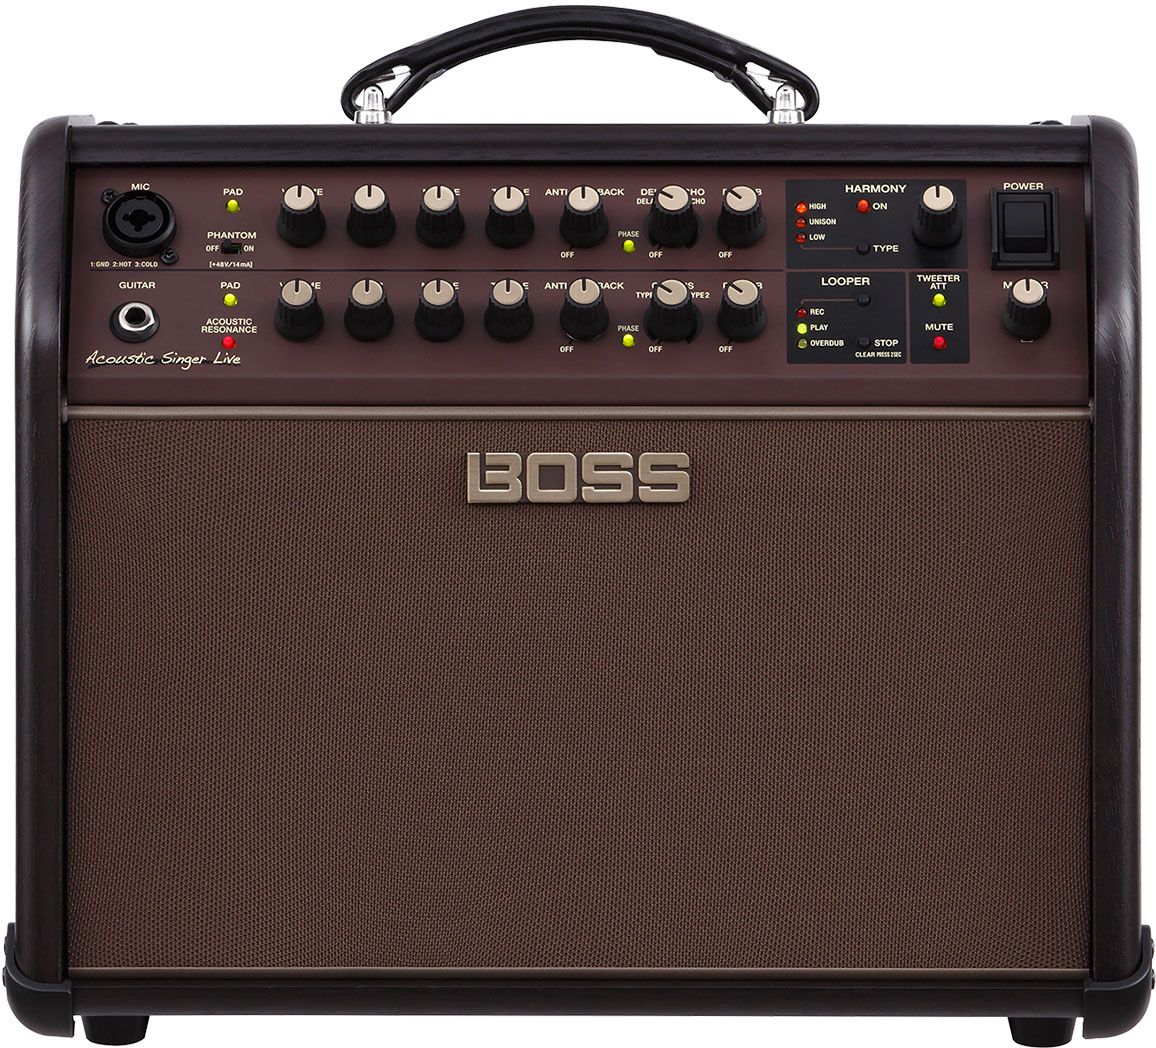 los amplificadores para guitarra Boss y Roland | Musicopolix